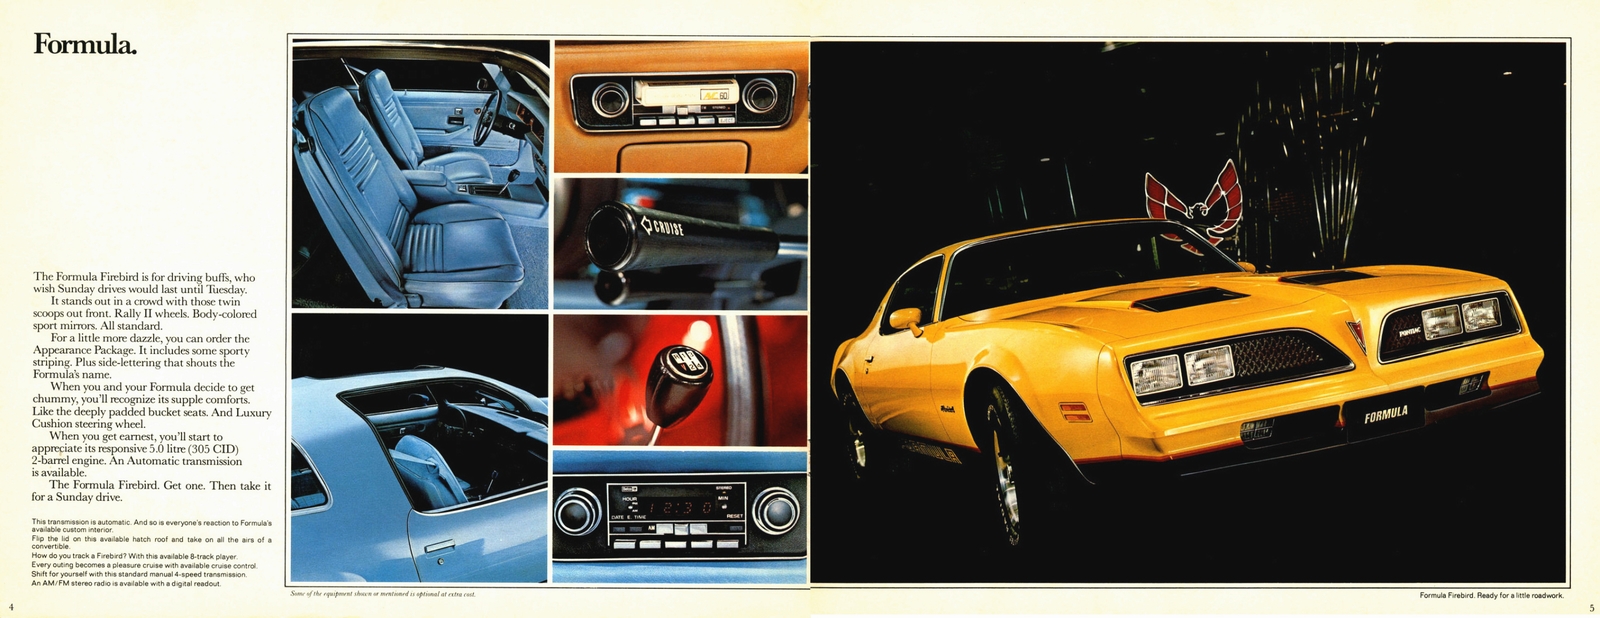 n_1978 Pontiac Firebird (Cdn)-04-05.jpg